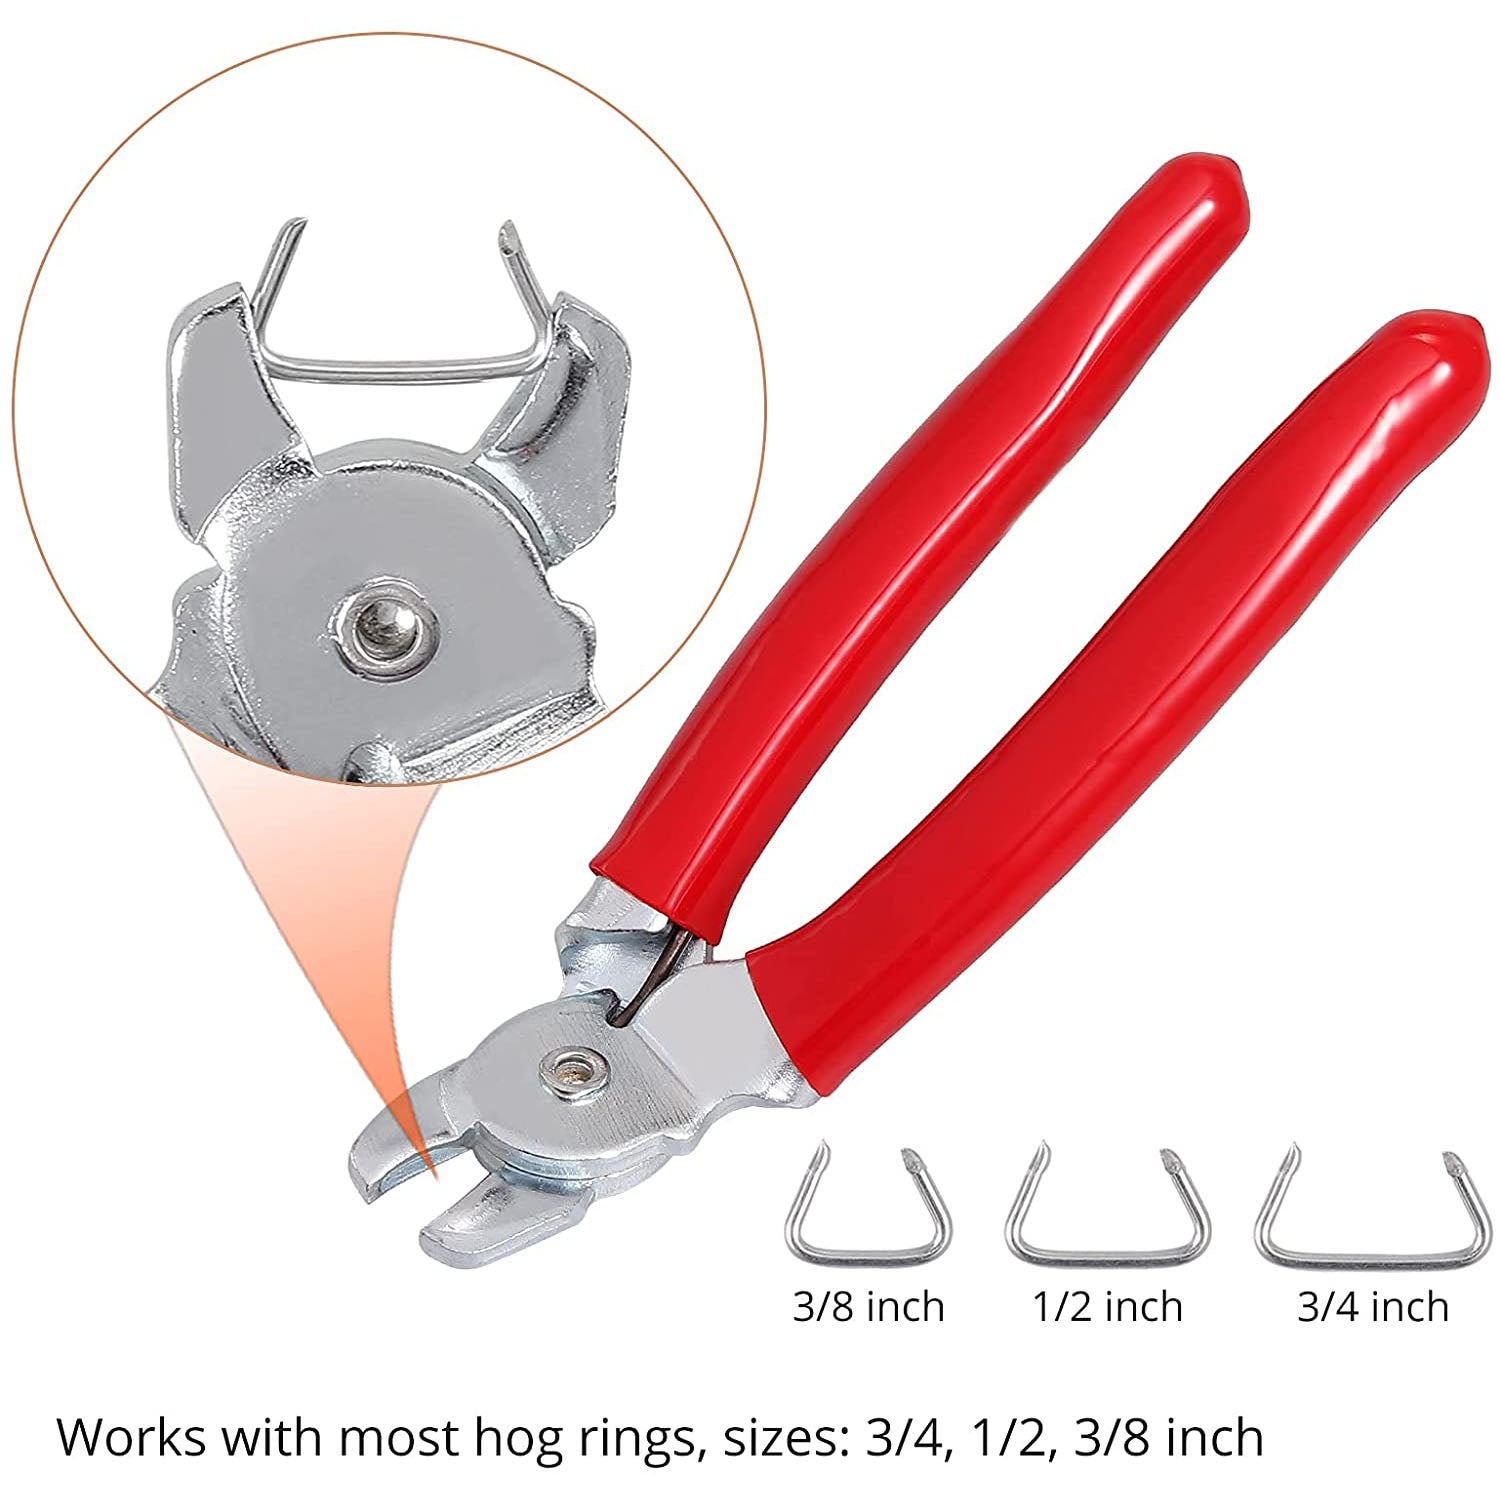 Hog Ring Pliers (Hog Rings Included)